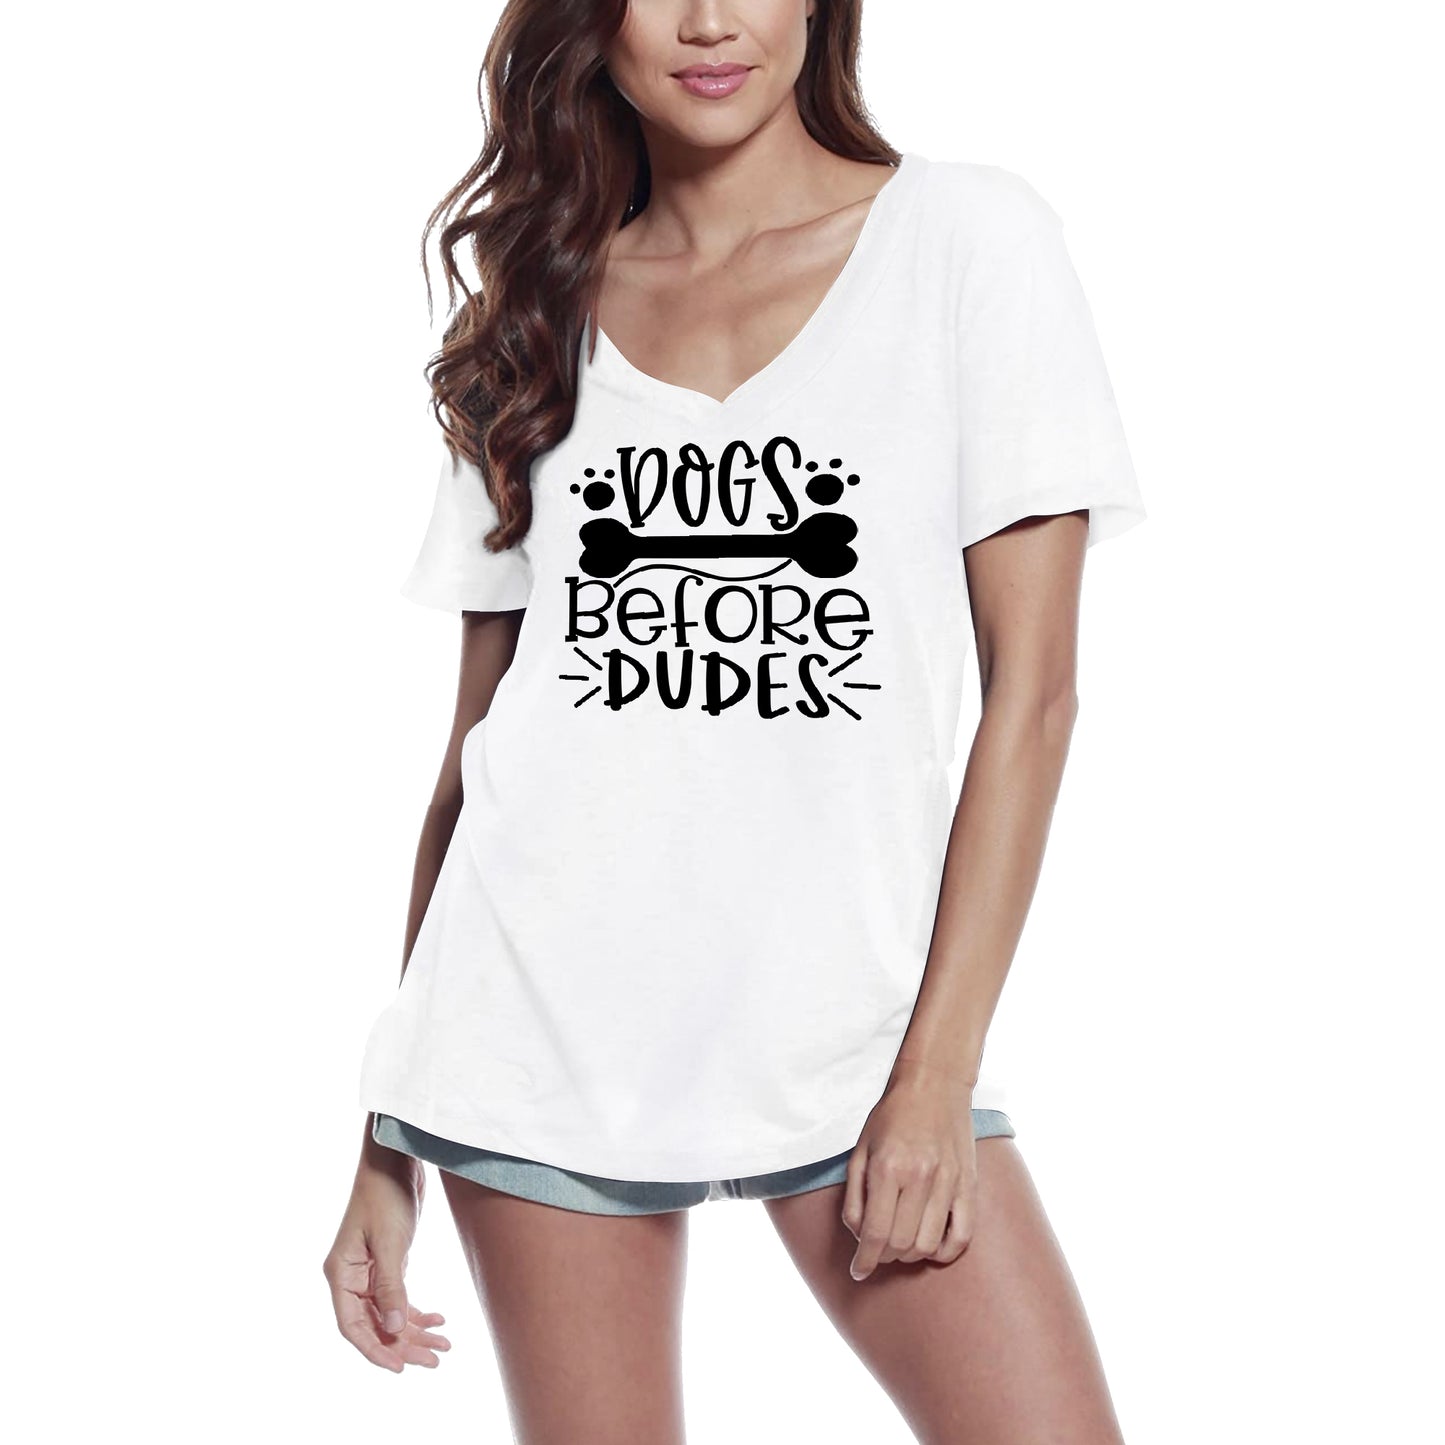 ULTRABASIC Women's T-Shirt Dogs Before Dudes - Short Sleeve Tee Shirt Tops